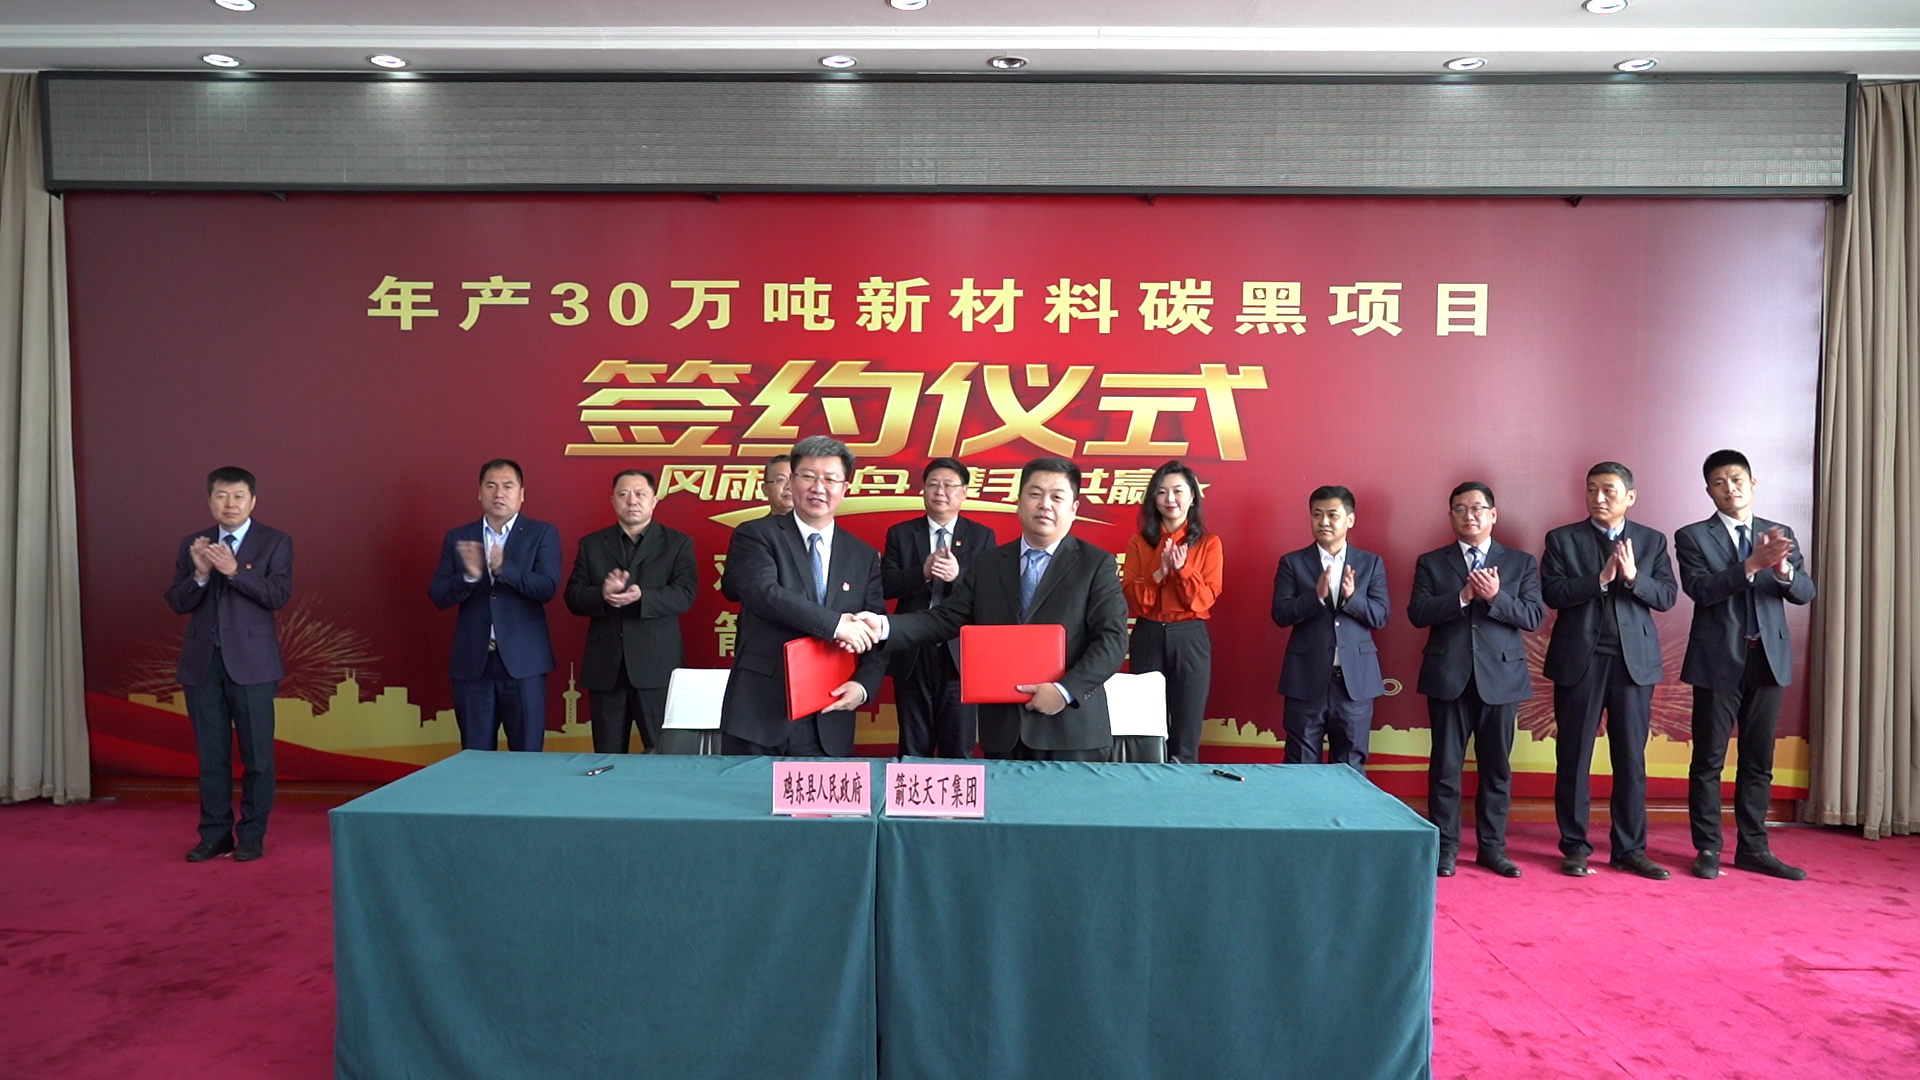 黑龍江省雞東縣年産30萬噸新材料碳黑項目成功簽約